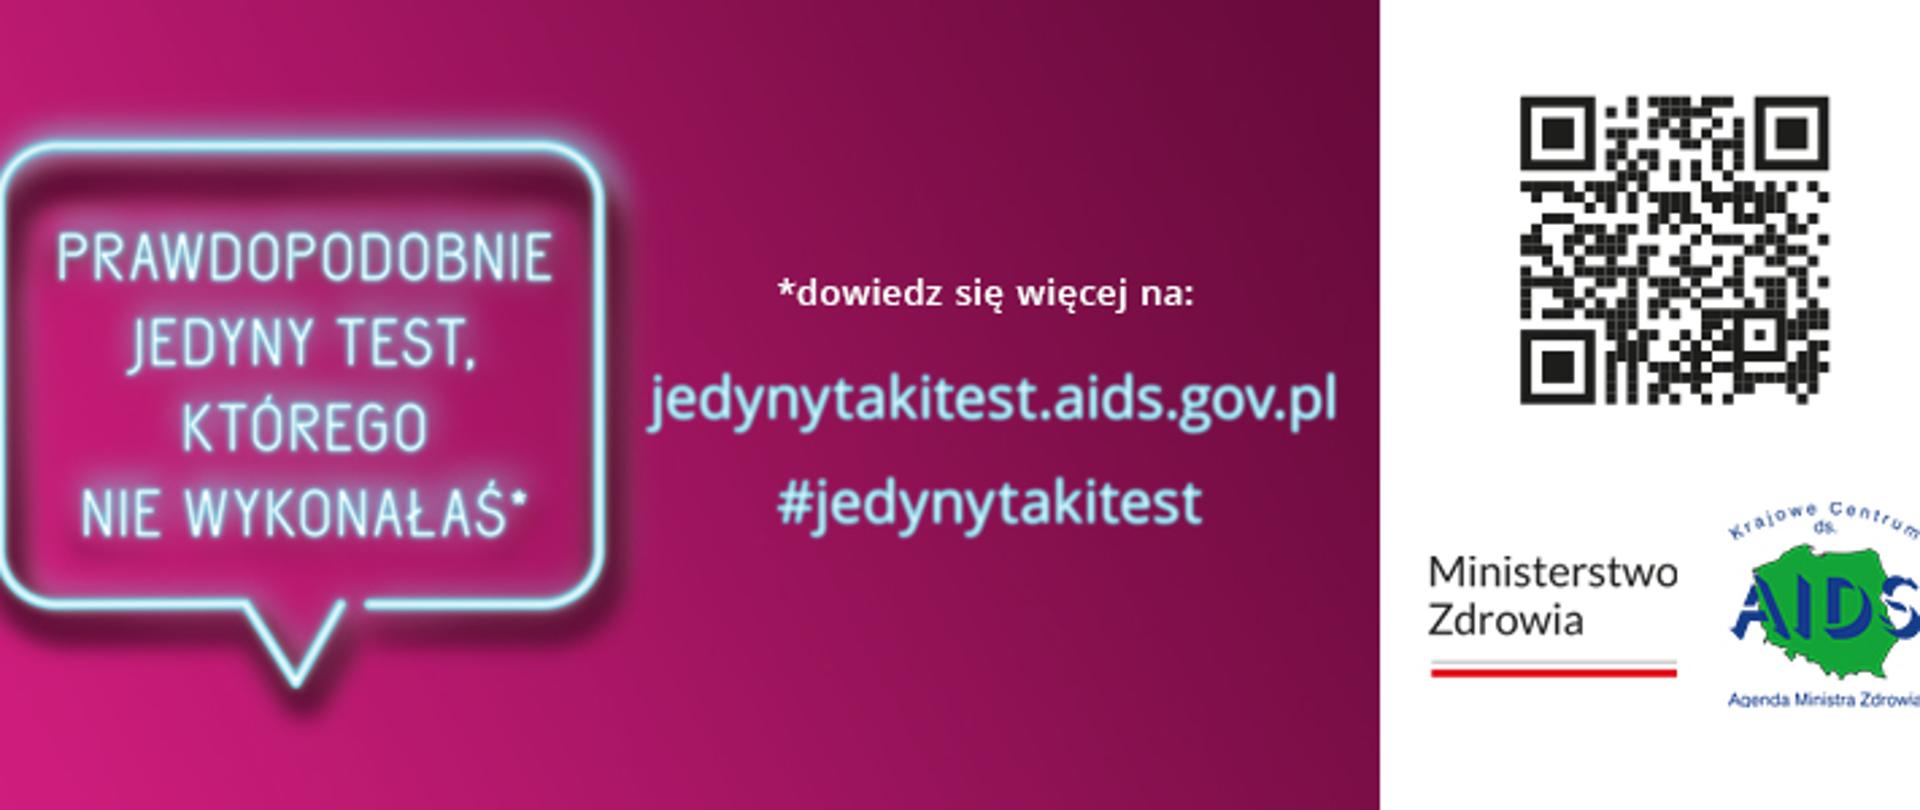 Niebieski neon na różowym tle z hasłem: prawdopodobnie jedyny test, którego nie wykonałeś. Dowiedz się więcej na jedynytakitest.aids.gov.pl